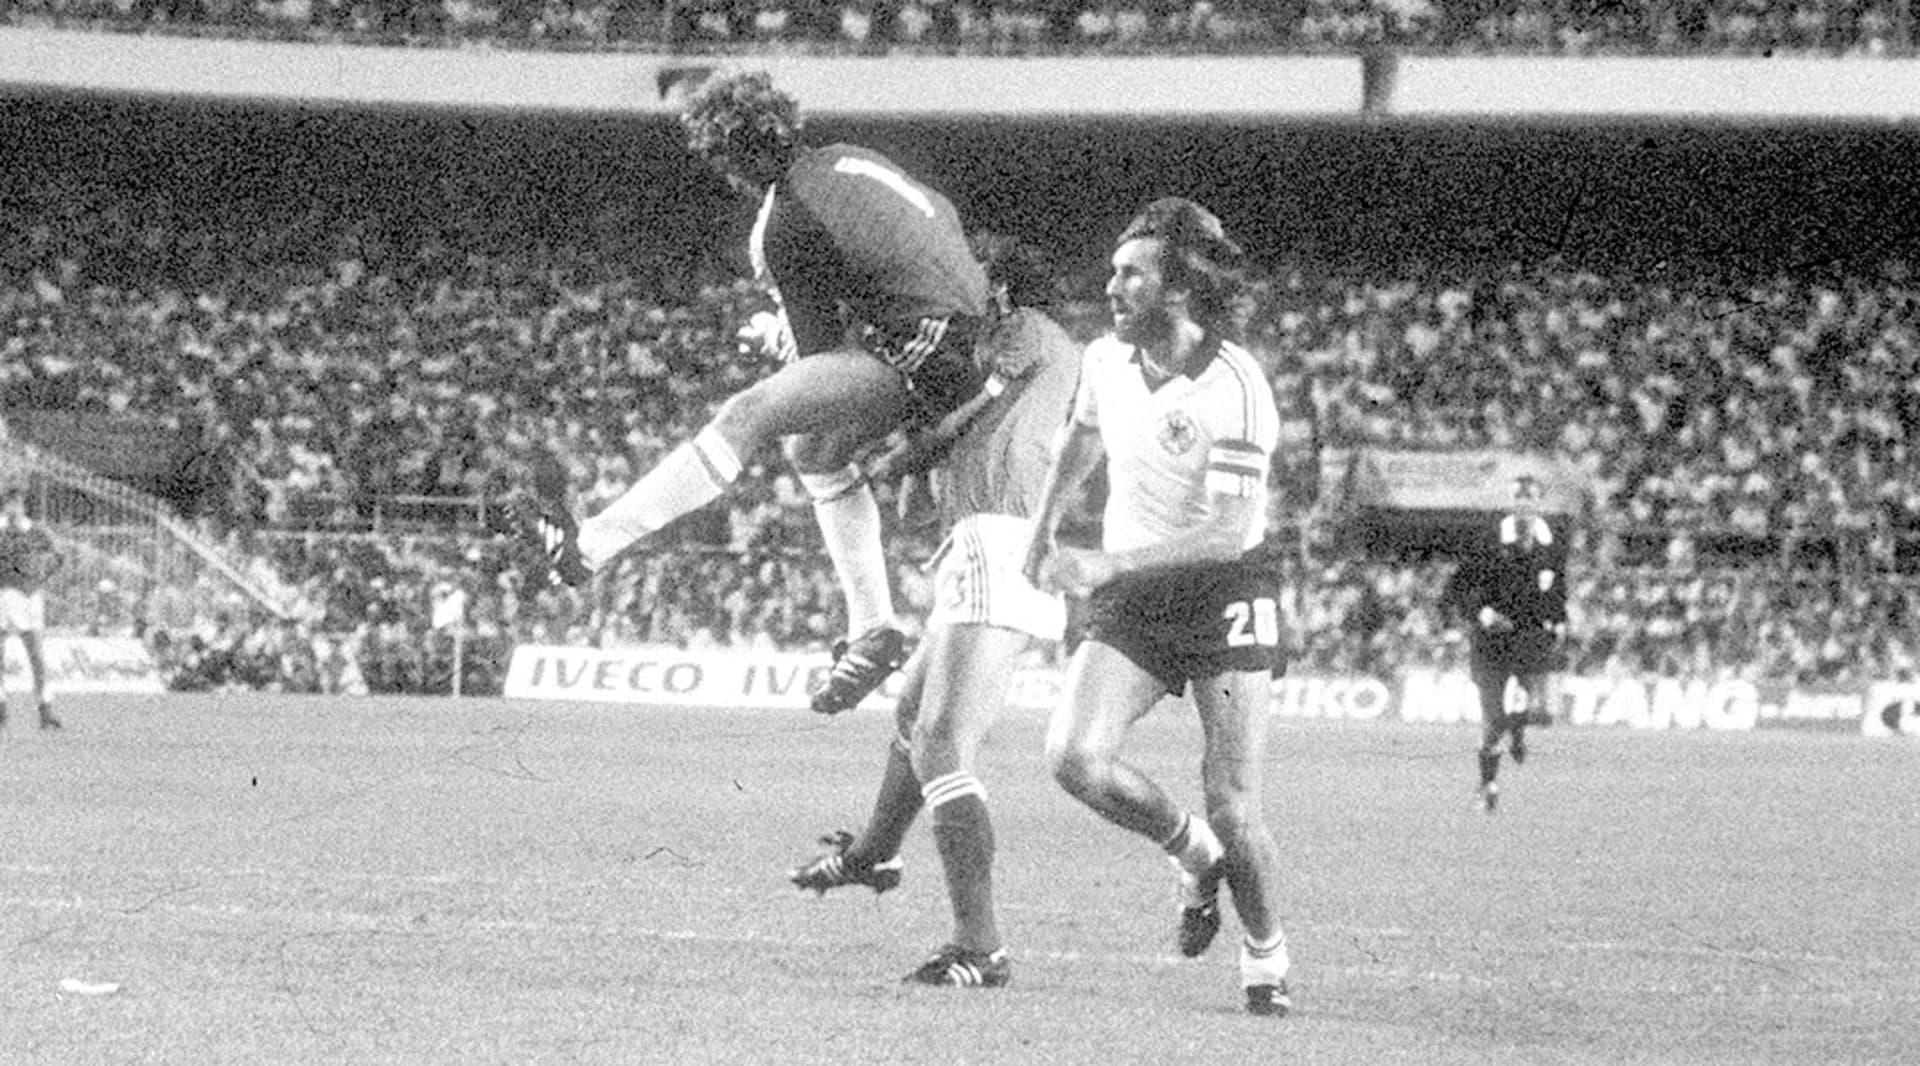 Archivní snímek ukazuje jeden z nejkontroverznějších okamžiků světového fotbalu. Německý brankář Harald Schumacher naráží během semifinále mistrovství světa 1982 v letu do francouzského obránce Patricka Battistona, který zůstal po vzájemném střetu v bezvědomí.